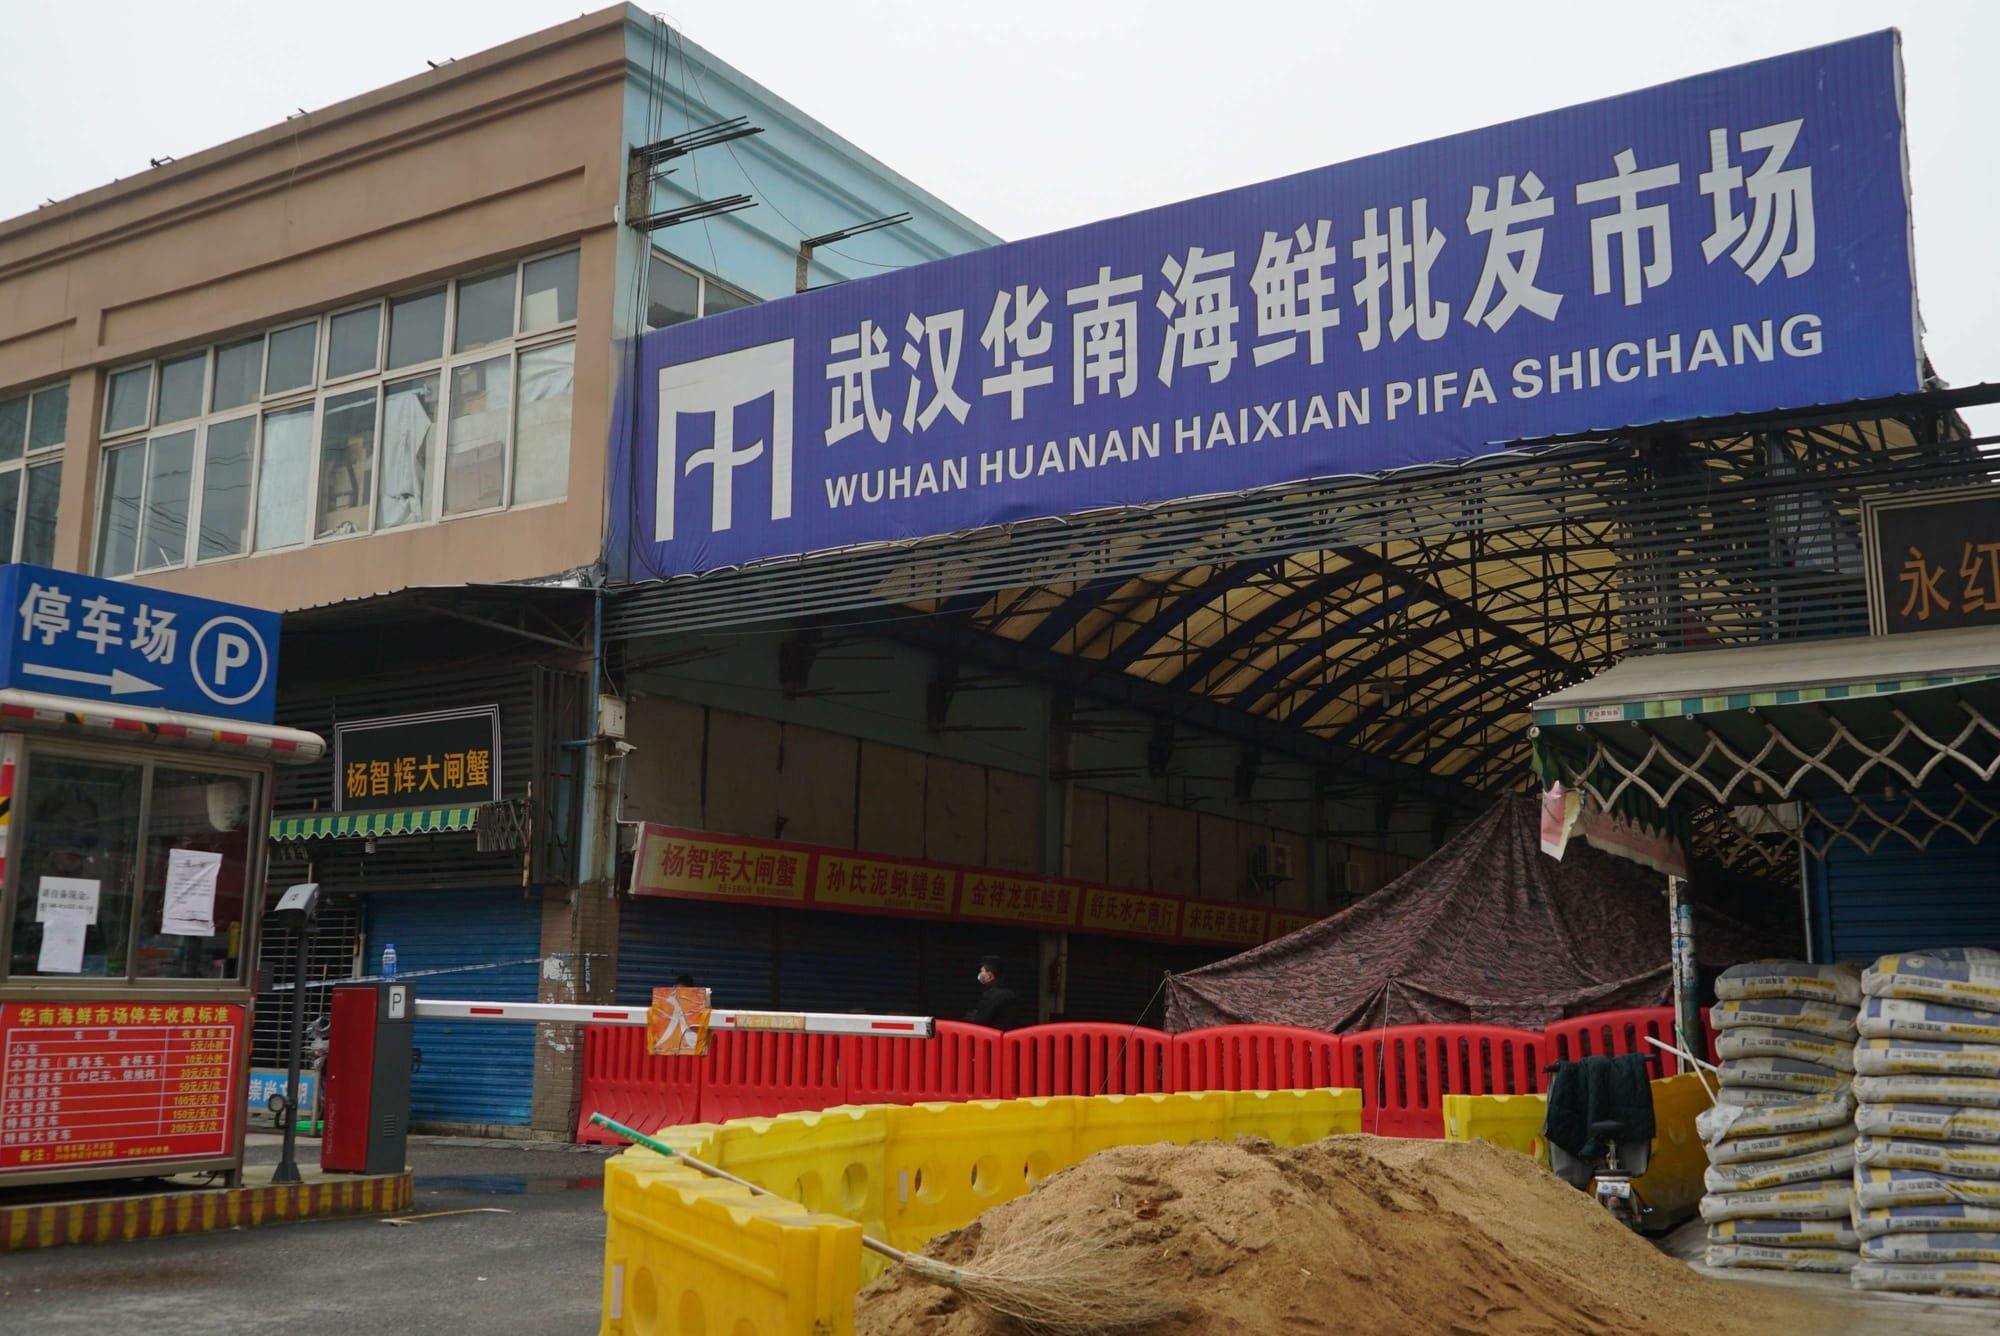 فريق منظمة الصحة بووهان يحقق بأصول الجائحة بسوق للمأكولات البحرية في الصين